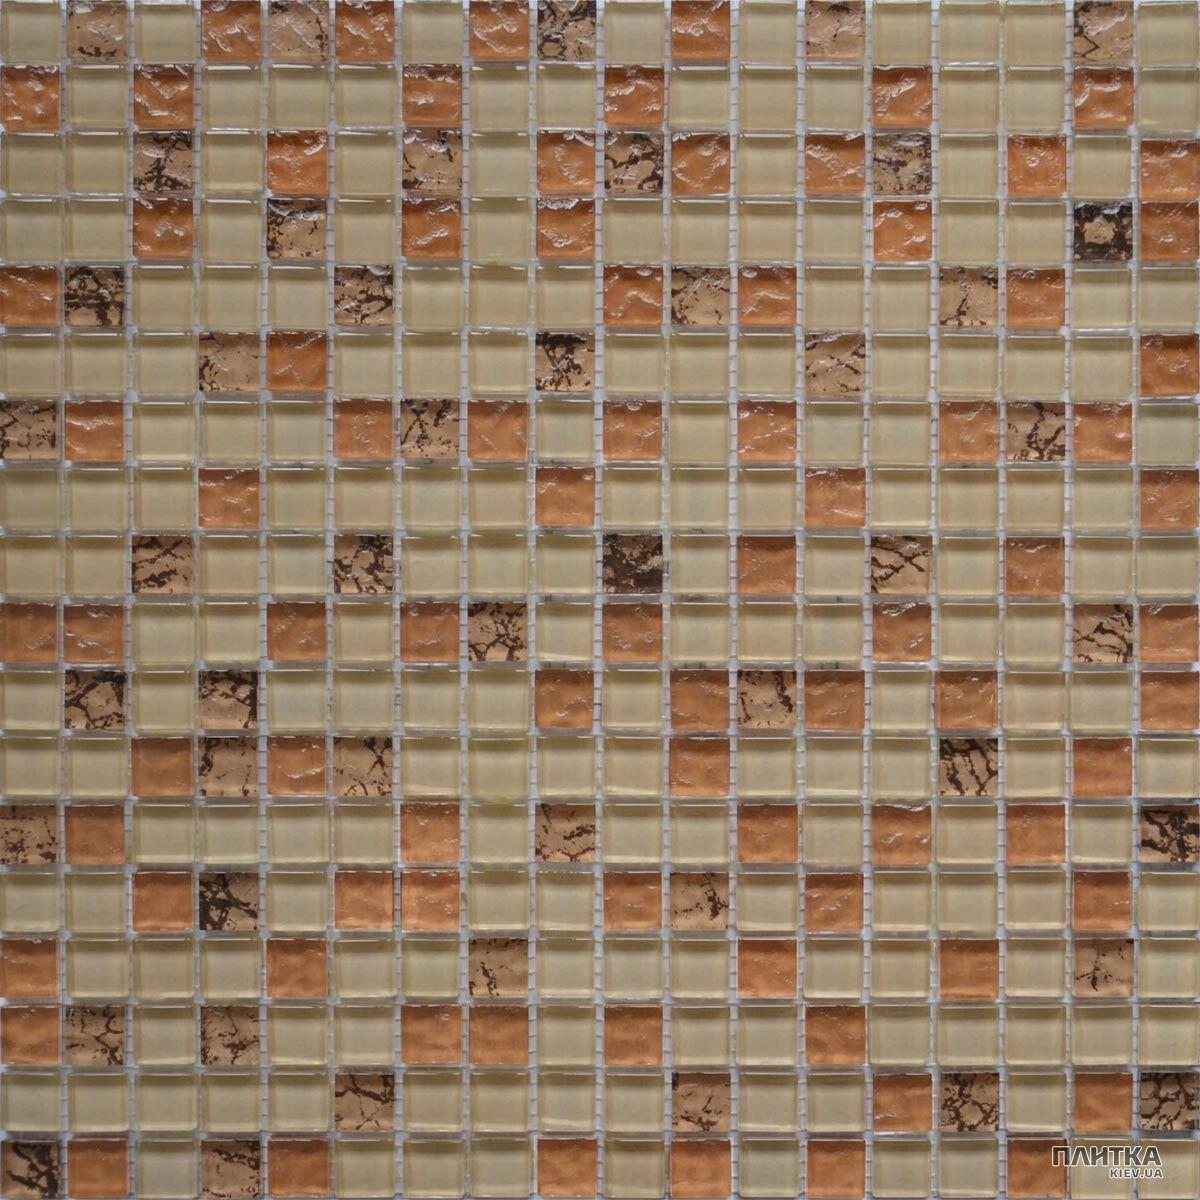 Мозаика Grand Kerama 582 микс бежевый-бронза рельеф-камень бежевый,коричневый,бронзовый